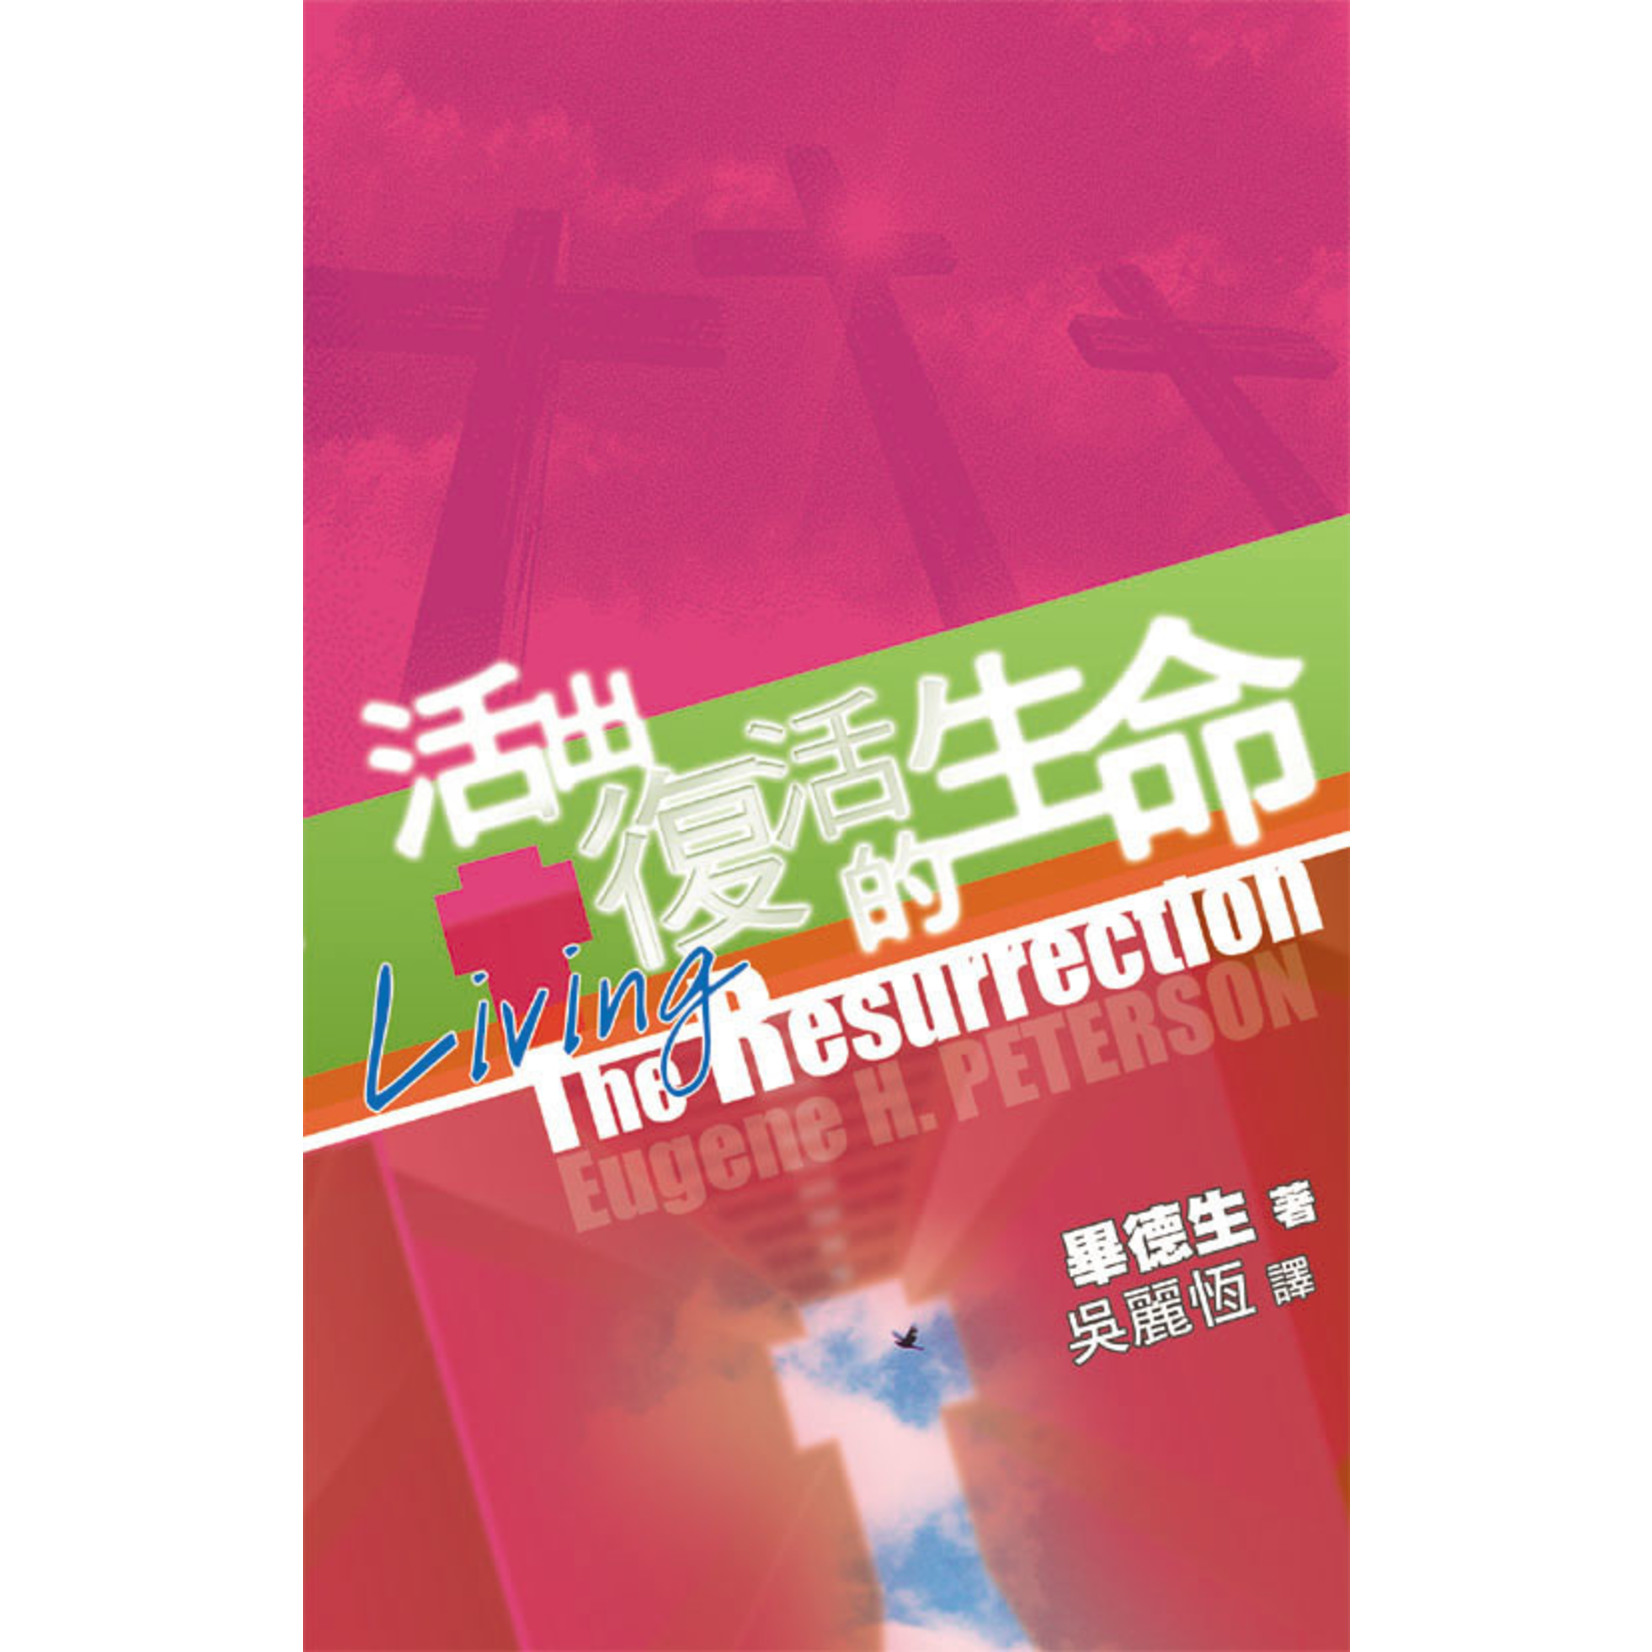 天道書樓 Tien Dao Publishing House 活出復活的生命 | Living The Resurrection